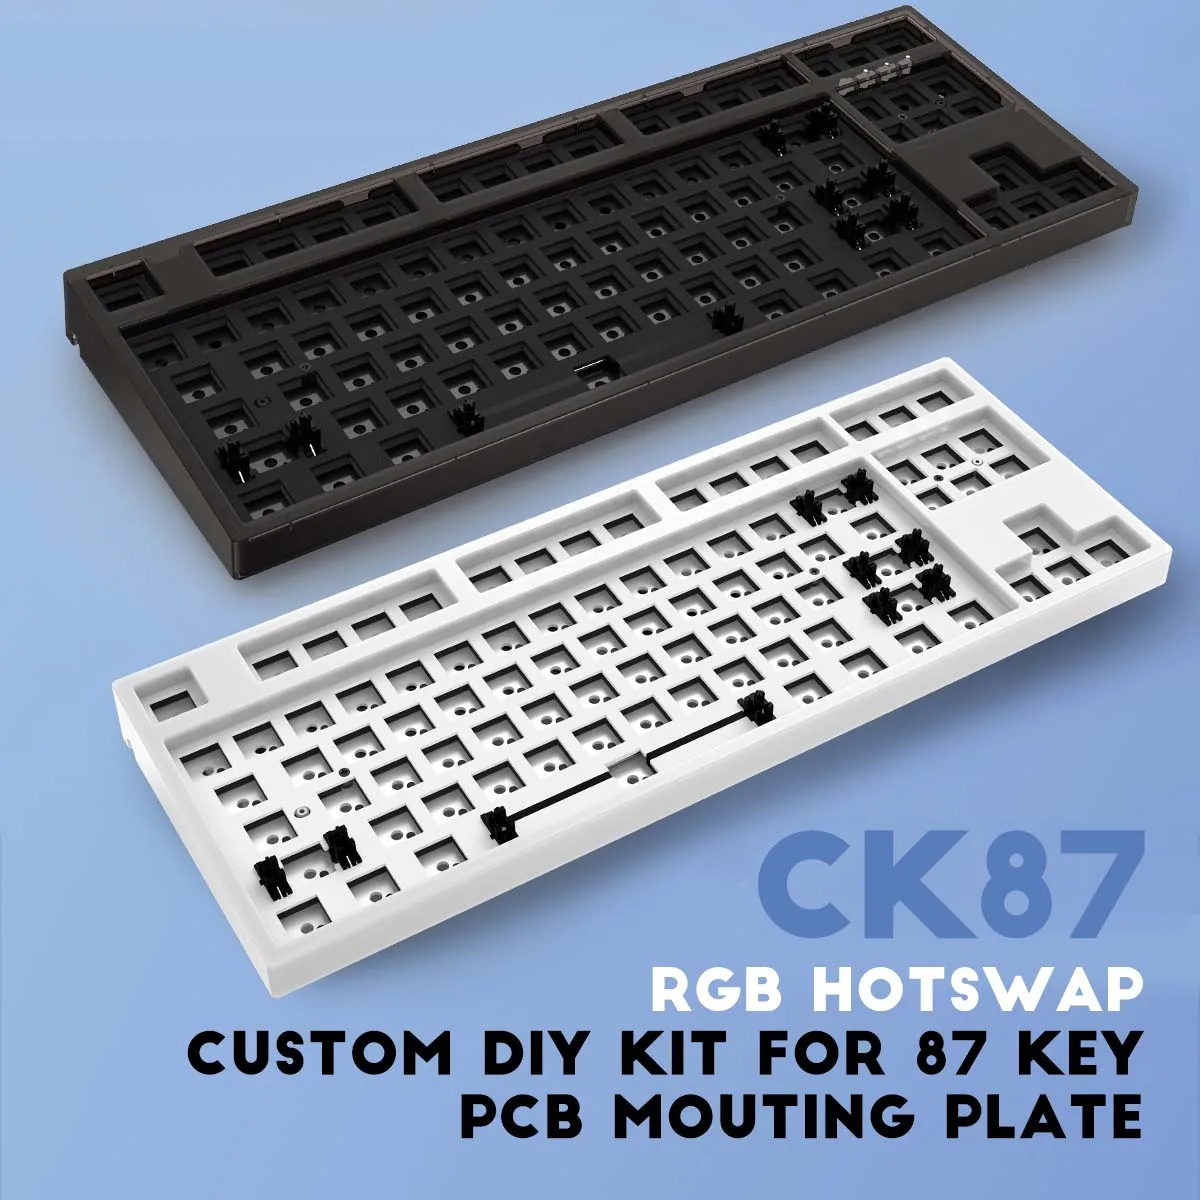 

GamaKay CK87 80% Keyboard Customized Kits Hot Swappable Bluetooth-compatible 2.4G Wireless 3 Mode Mechanical Keyboard Kit